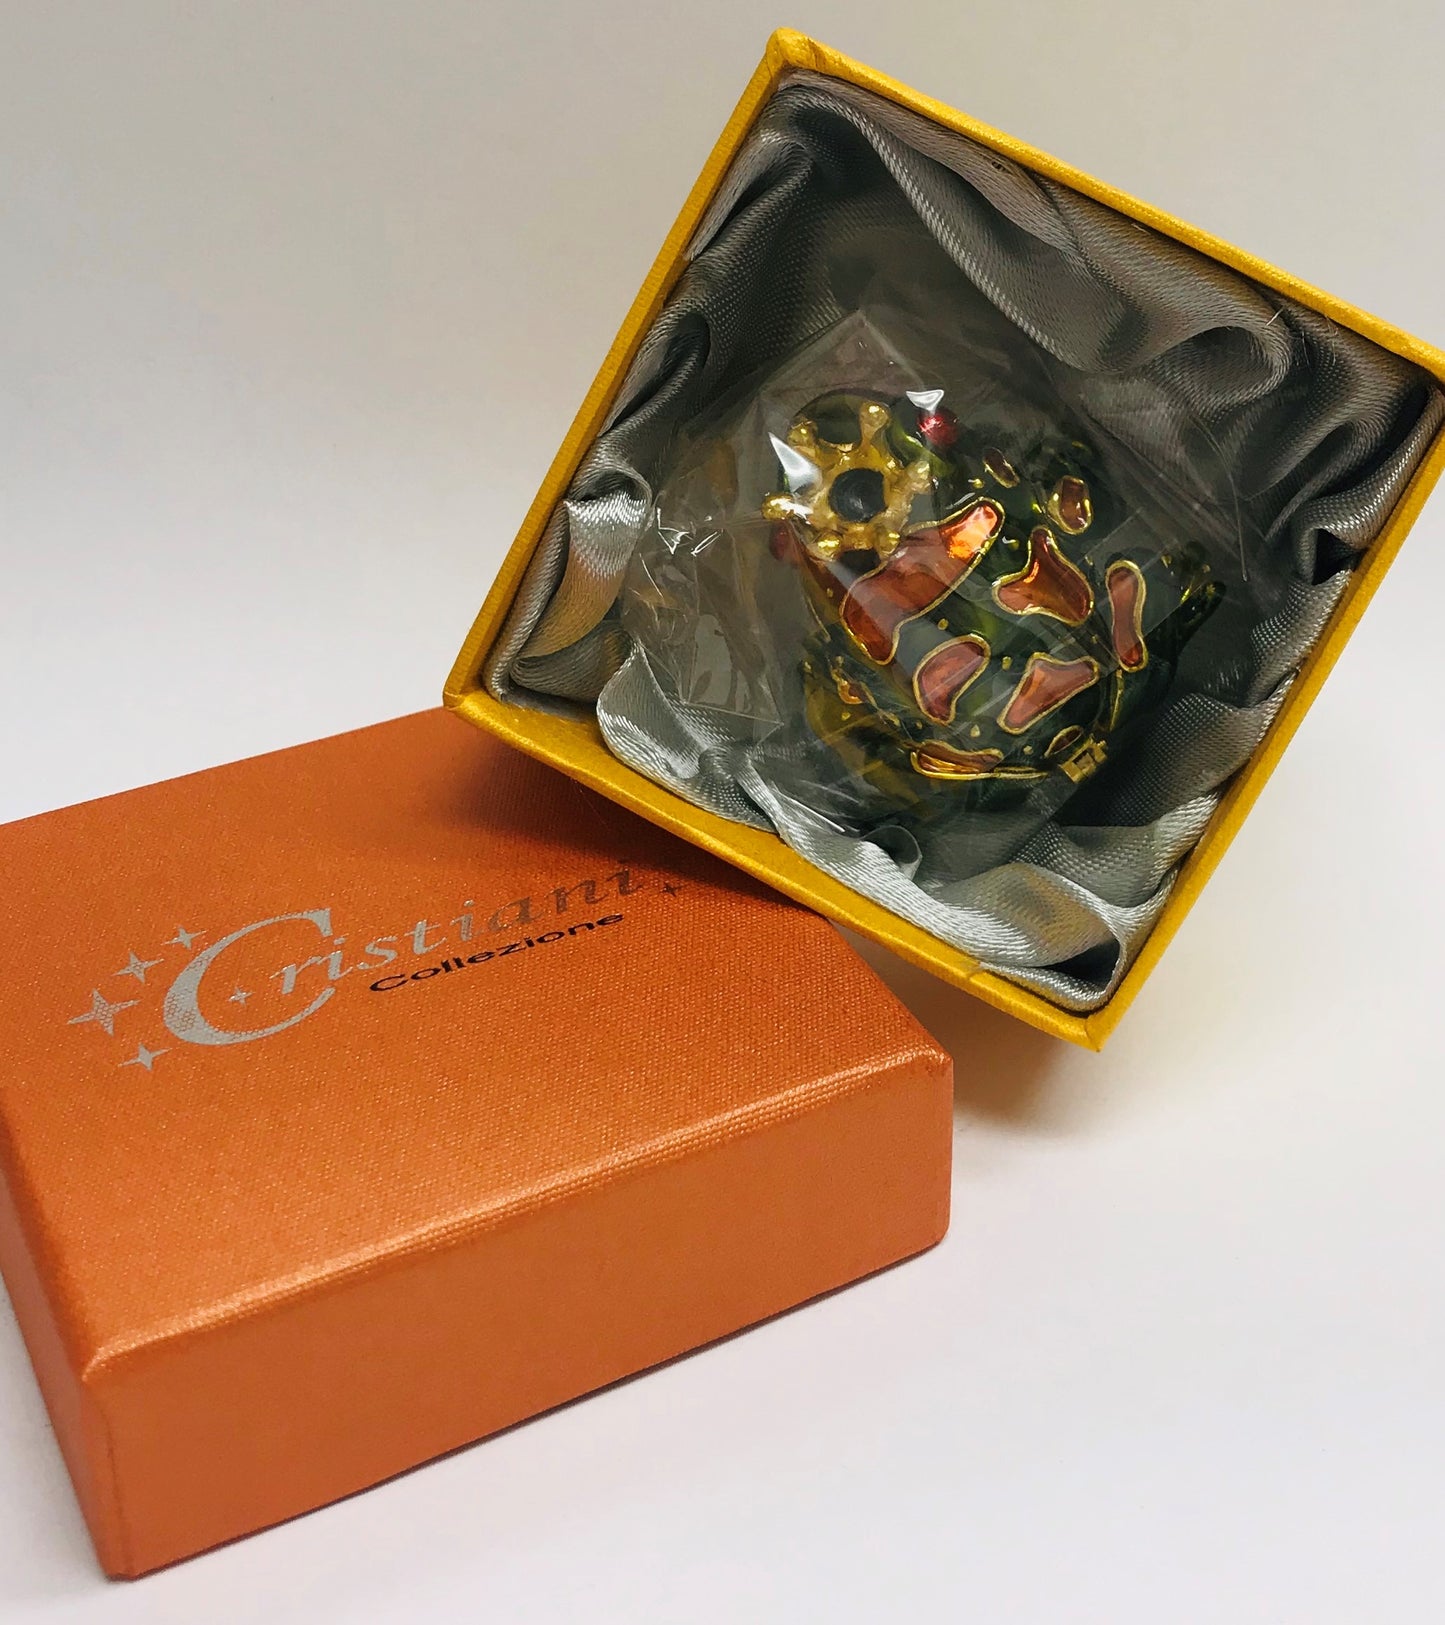 Cristiani Collezione Small Frog Trinket Box.